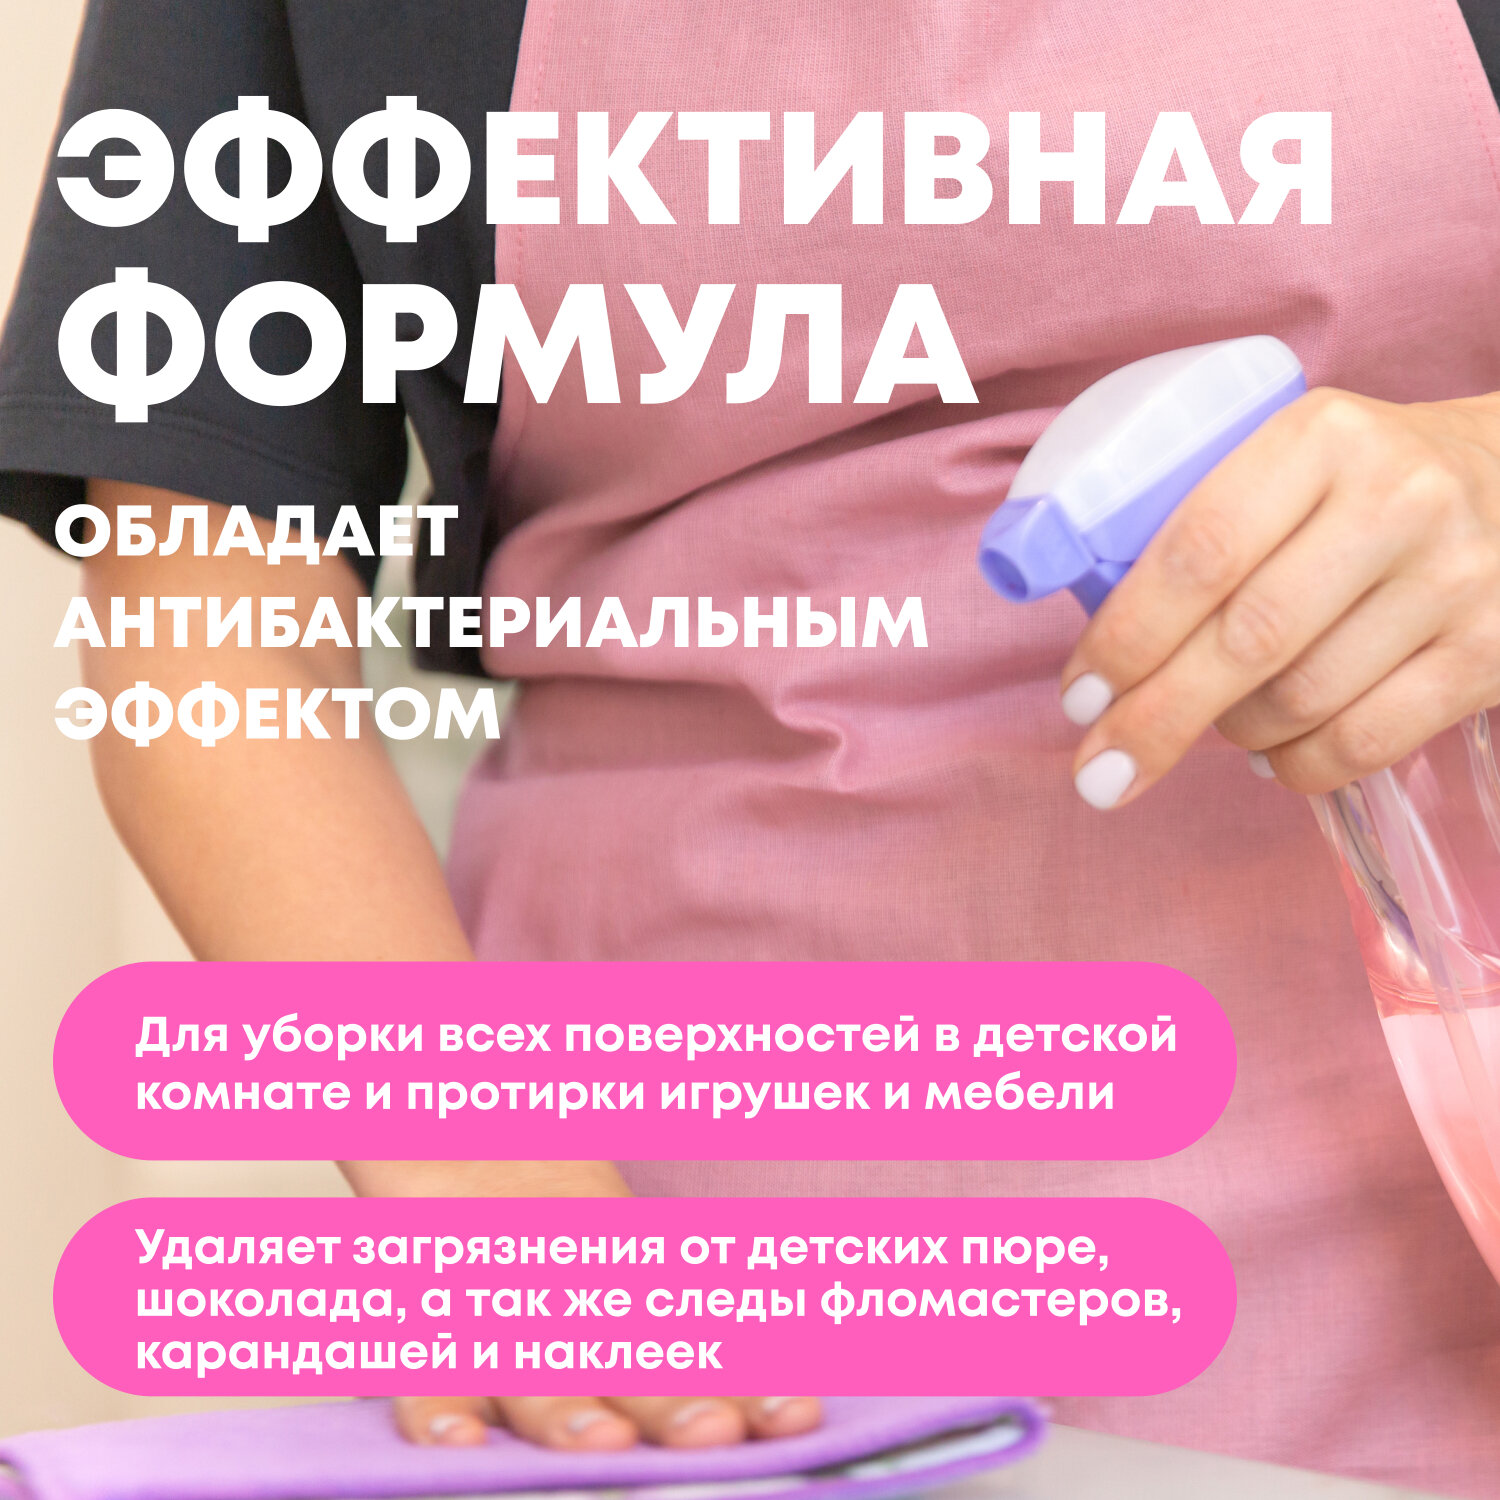 Средство Meine Liebe для уборки детских помещений с Антибактериальным эффектом, 500 мл - фото №2